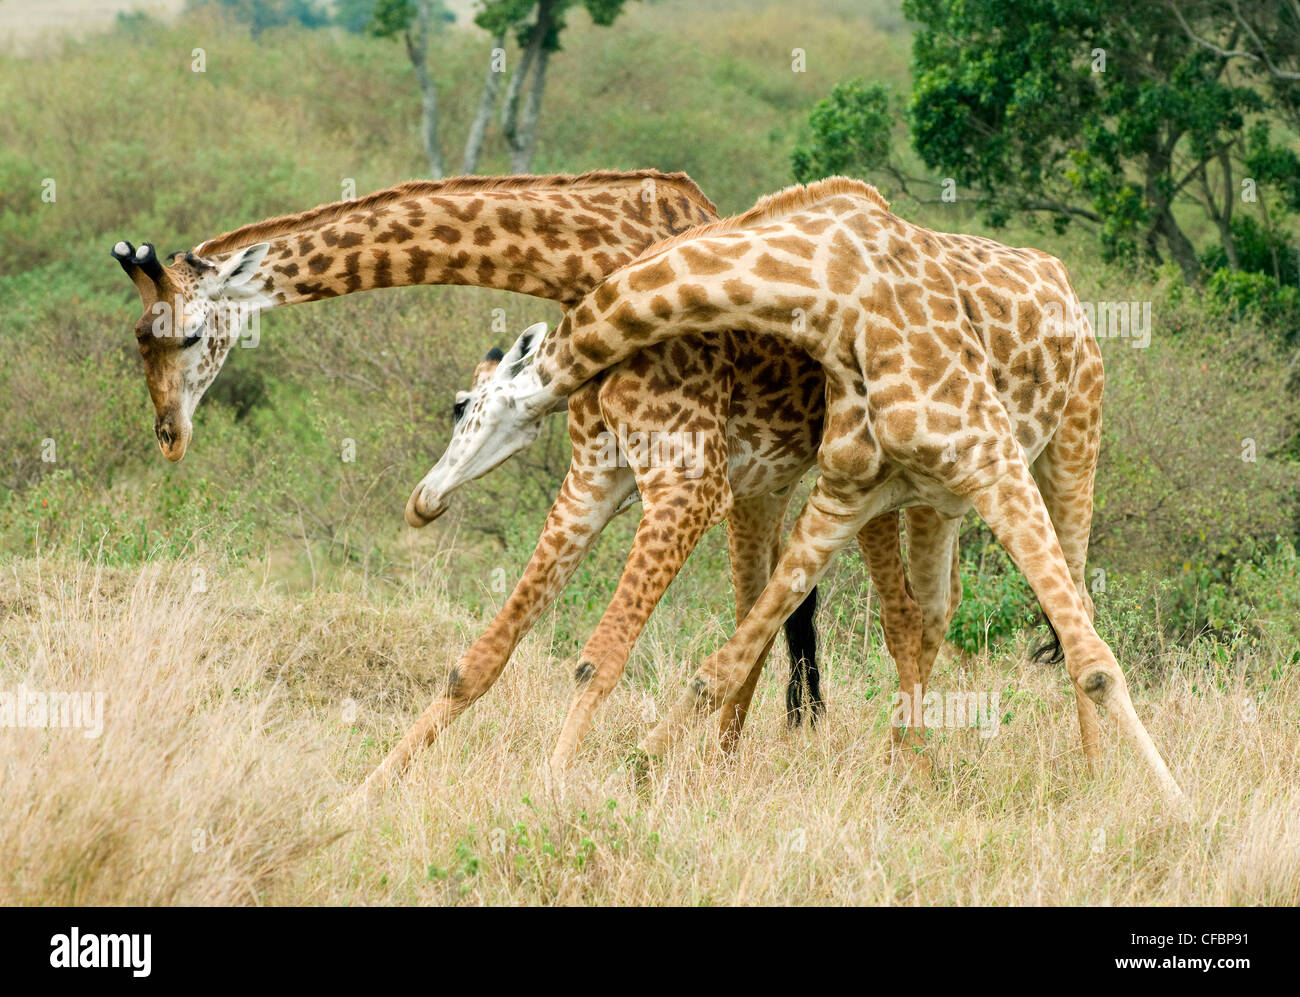 Mâle adulte, les girafes (Giraffa camelopardalis) combat dans une position dominante, l'affichage de la réserve de Masai Mara, Kenya, Afrique de l'Est Banque D'Images